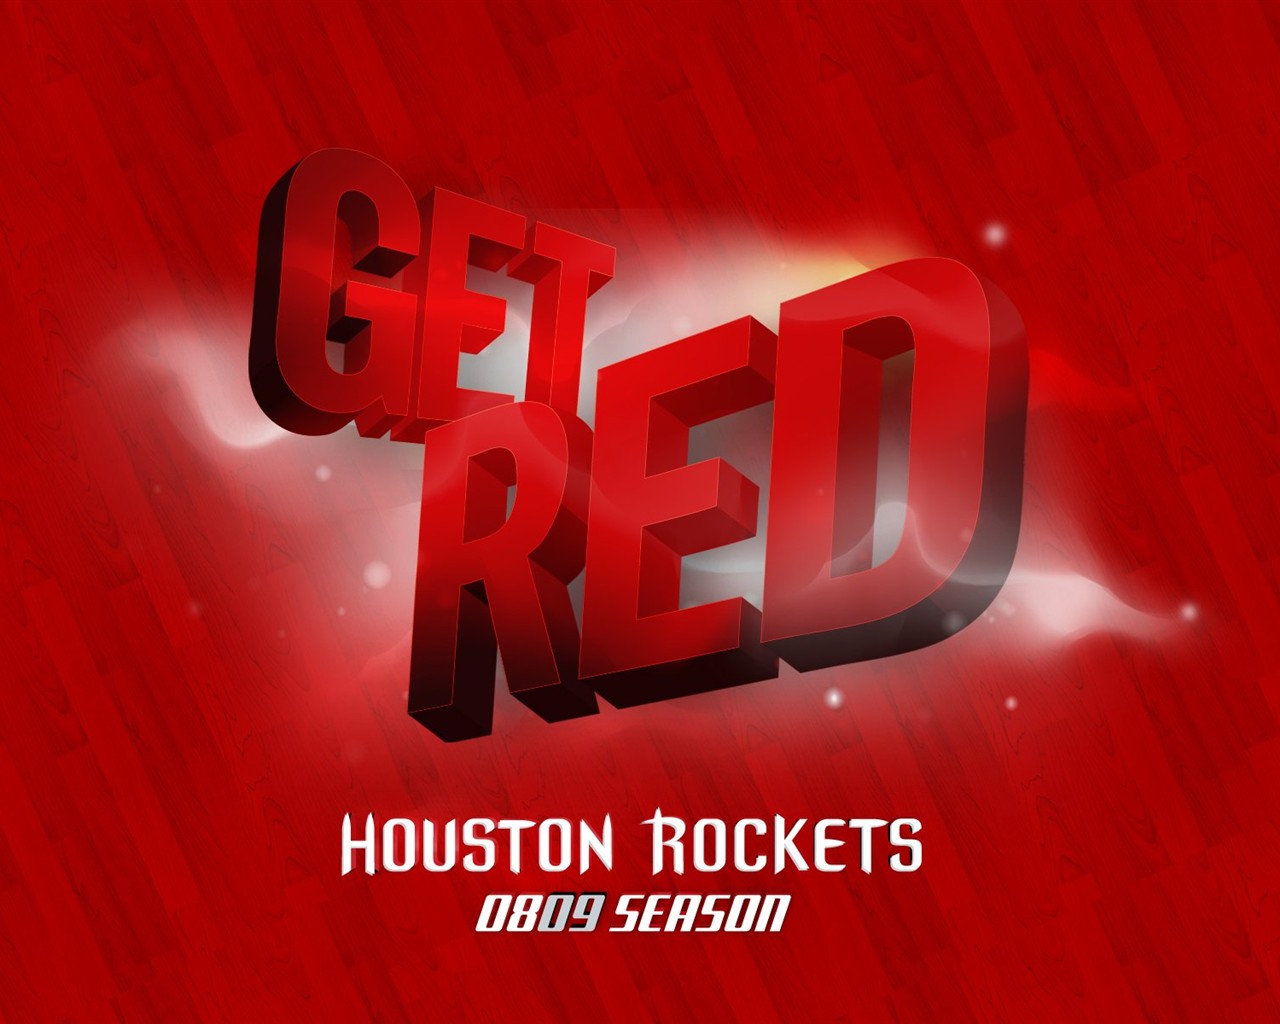 NBA Houston Rockets 2009 Playoff-Tapete #5 - 1280x1024